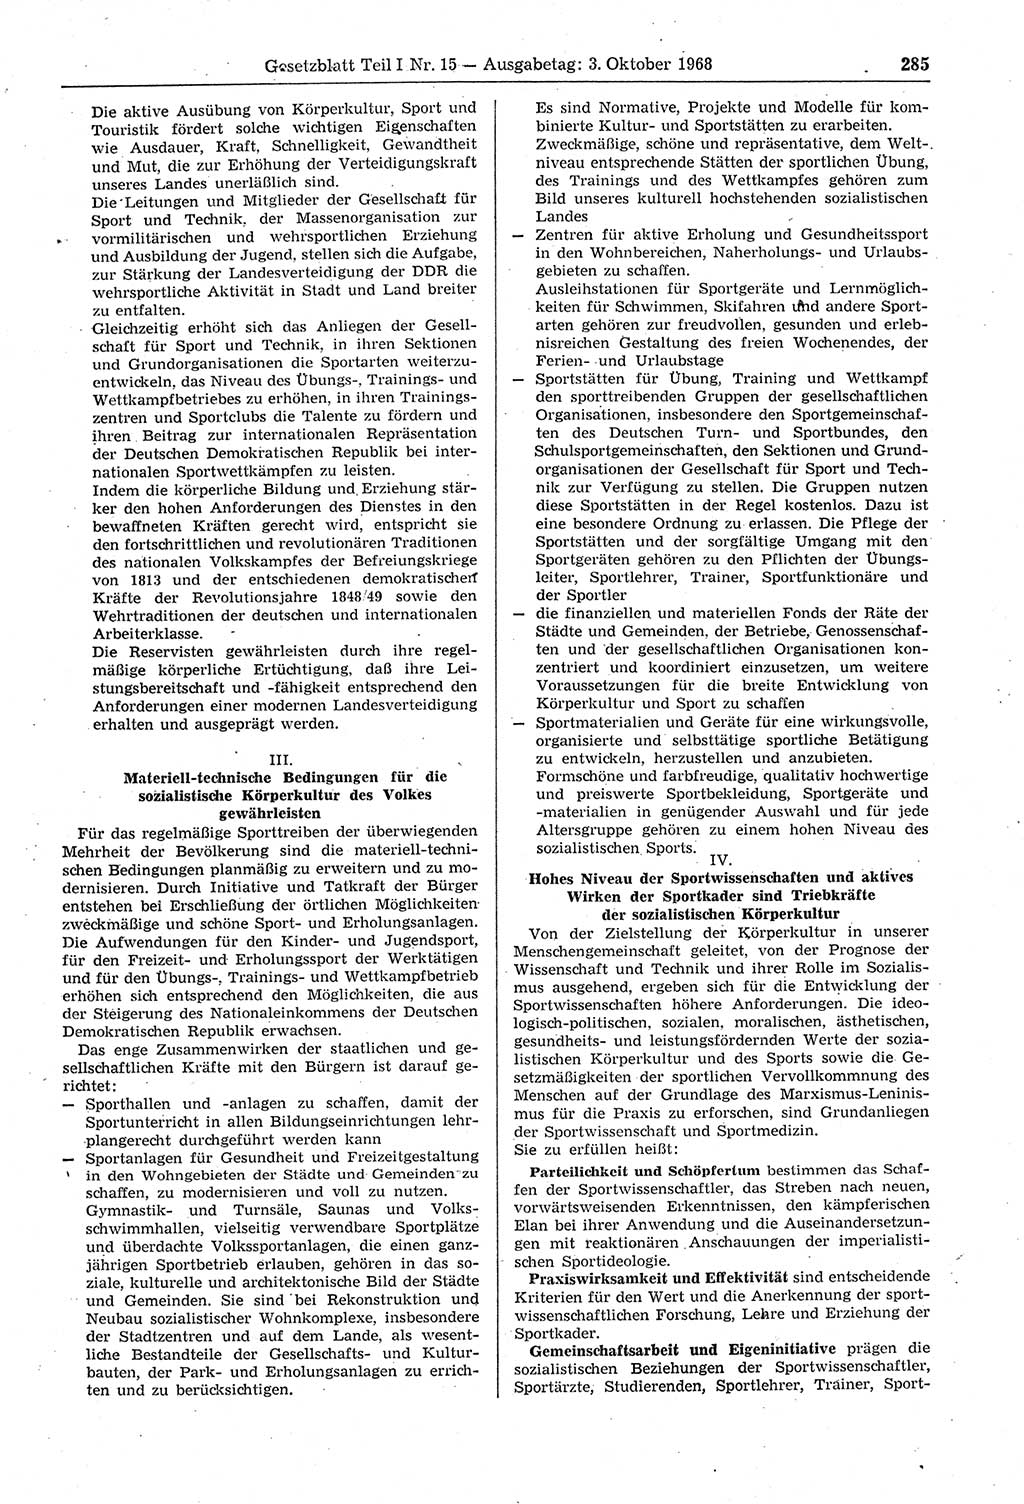 Gesetzblatt (GBl.) der Deutschen Demokratischen Republik (DDR) Teil Ⅰ 1968, Seite 285 (GBl. DDR Ⅰ 1968, S. 285)